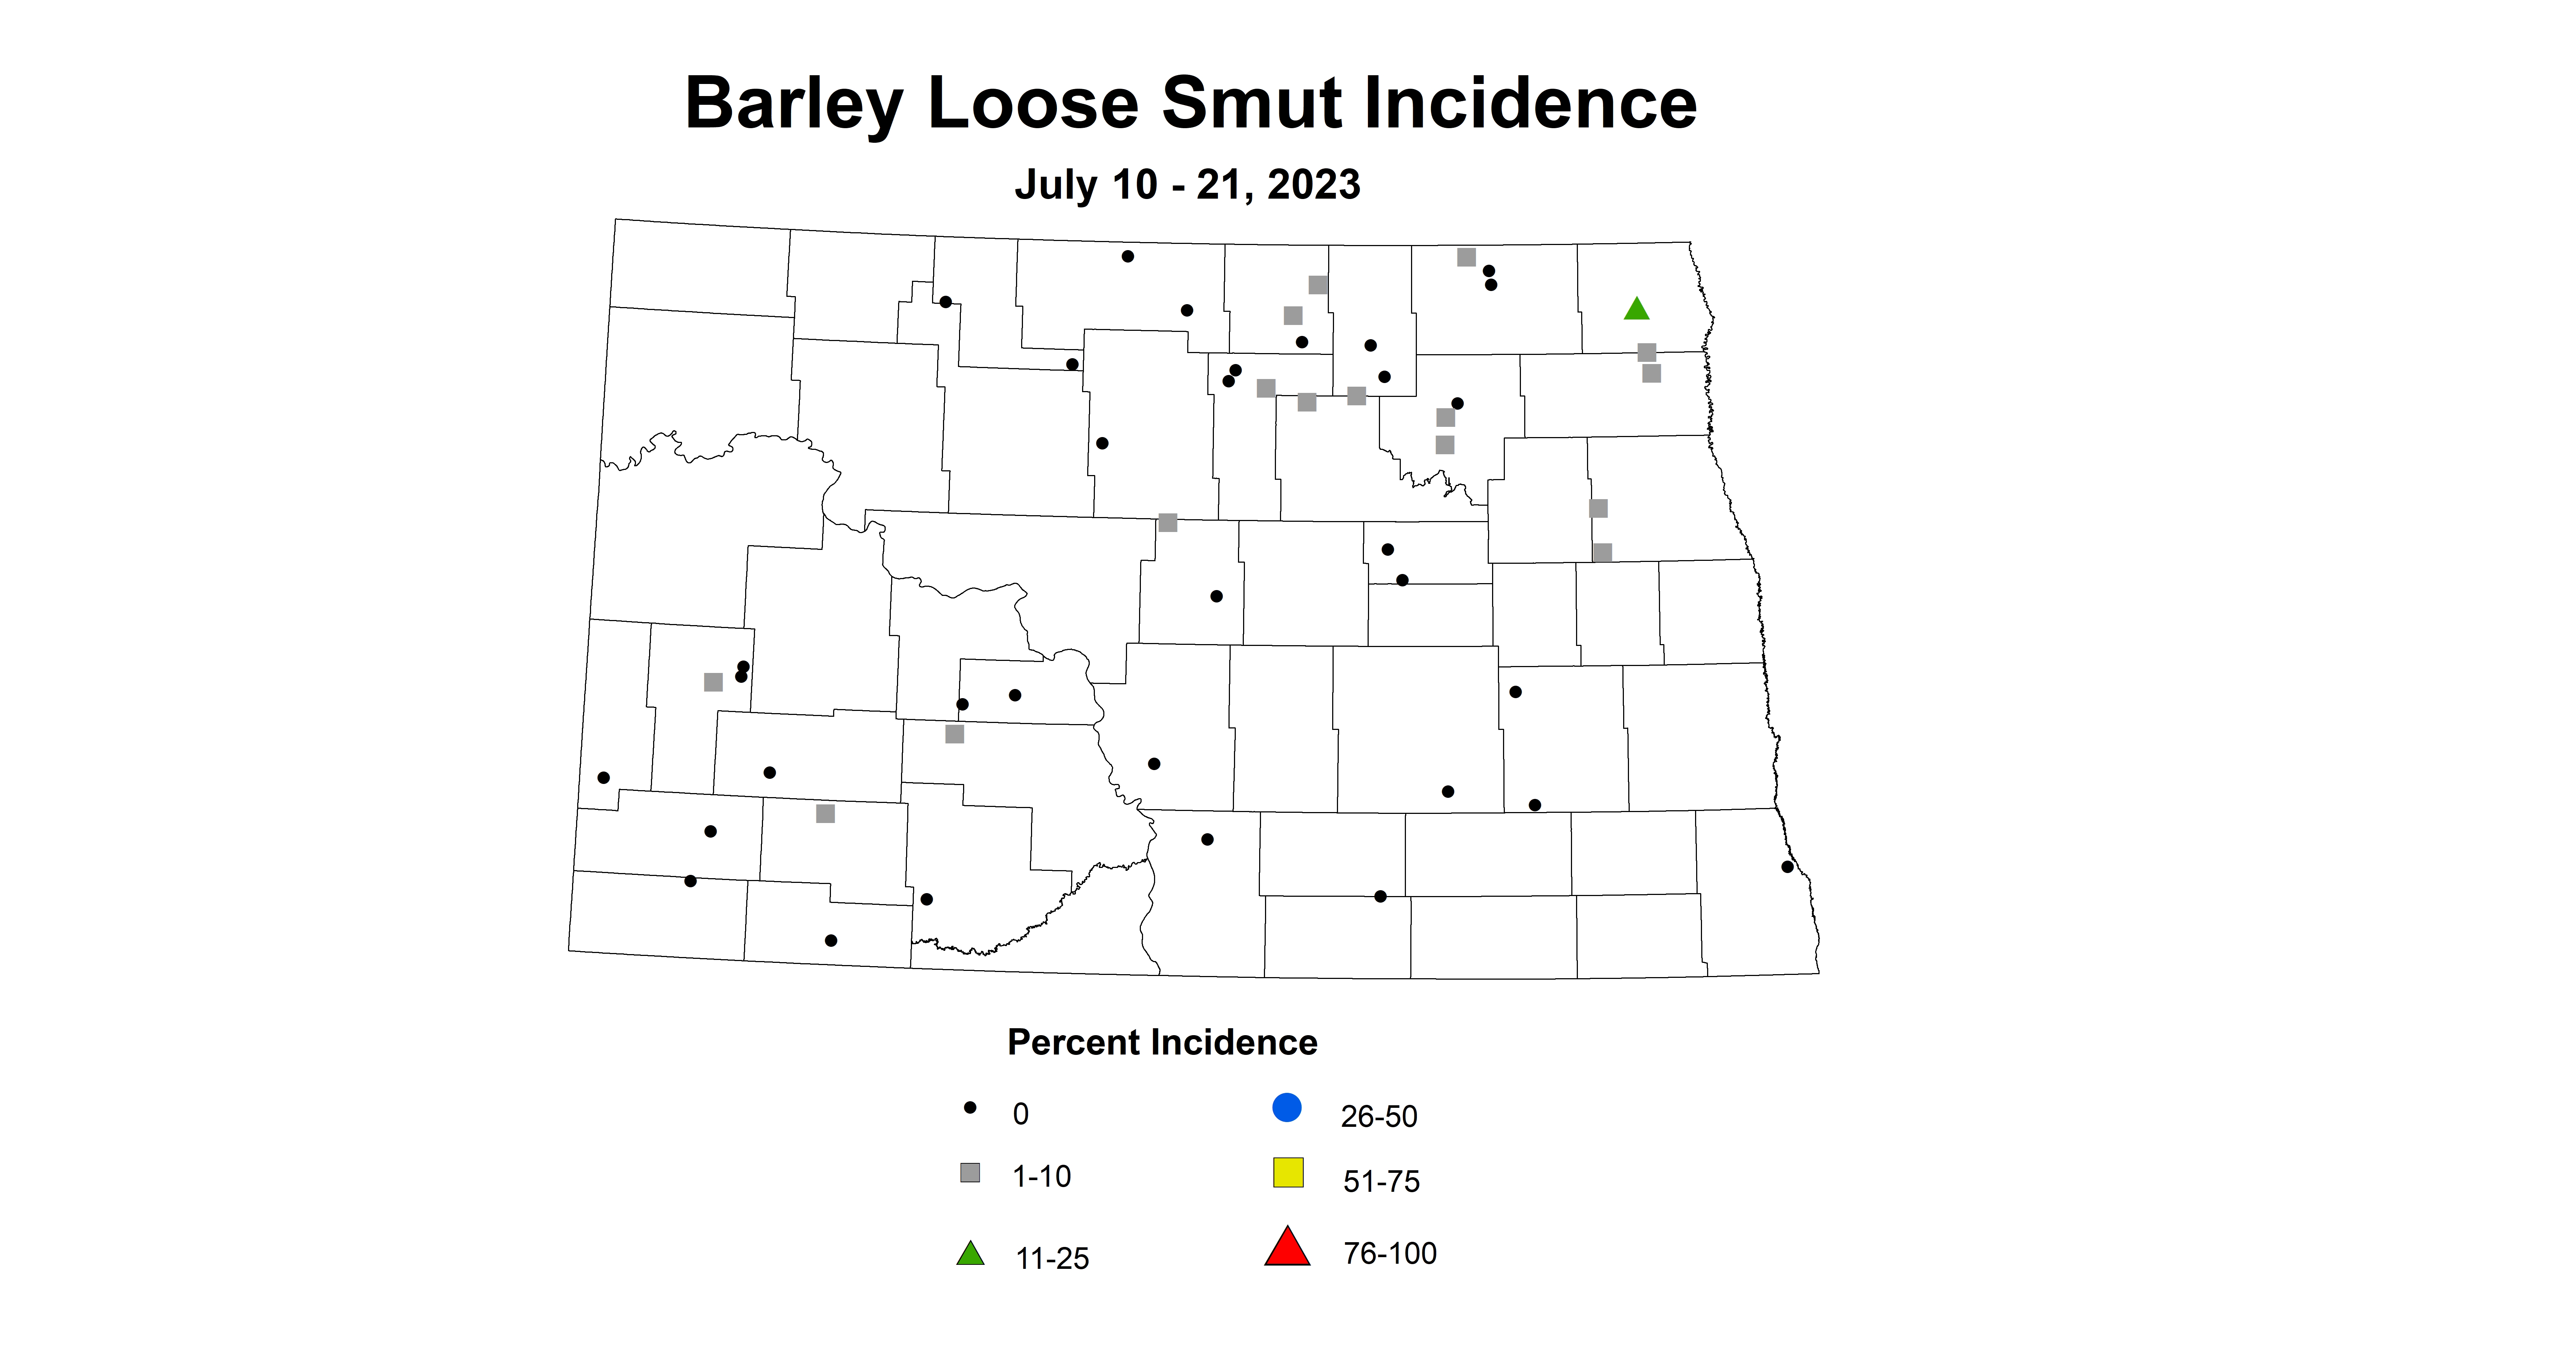 barley loose smut incidence July 10-21 2023